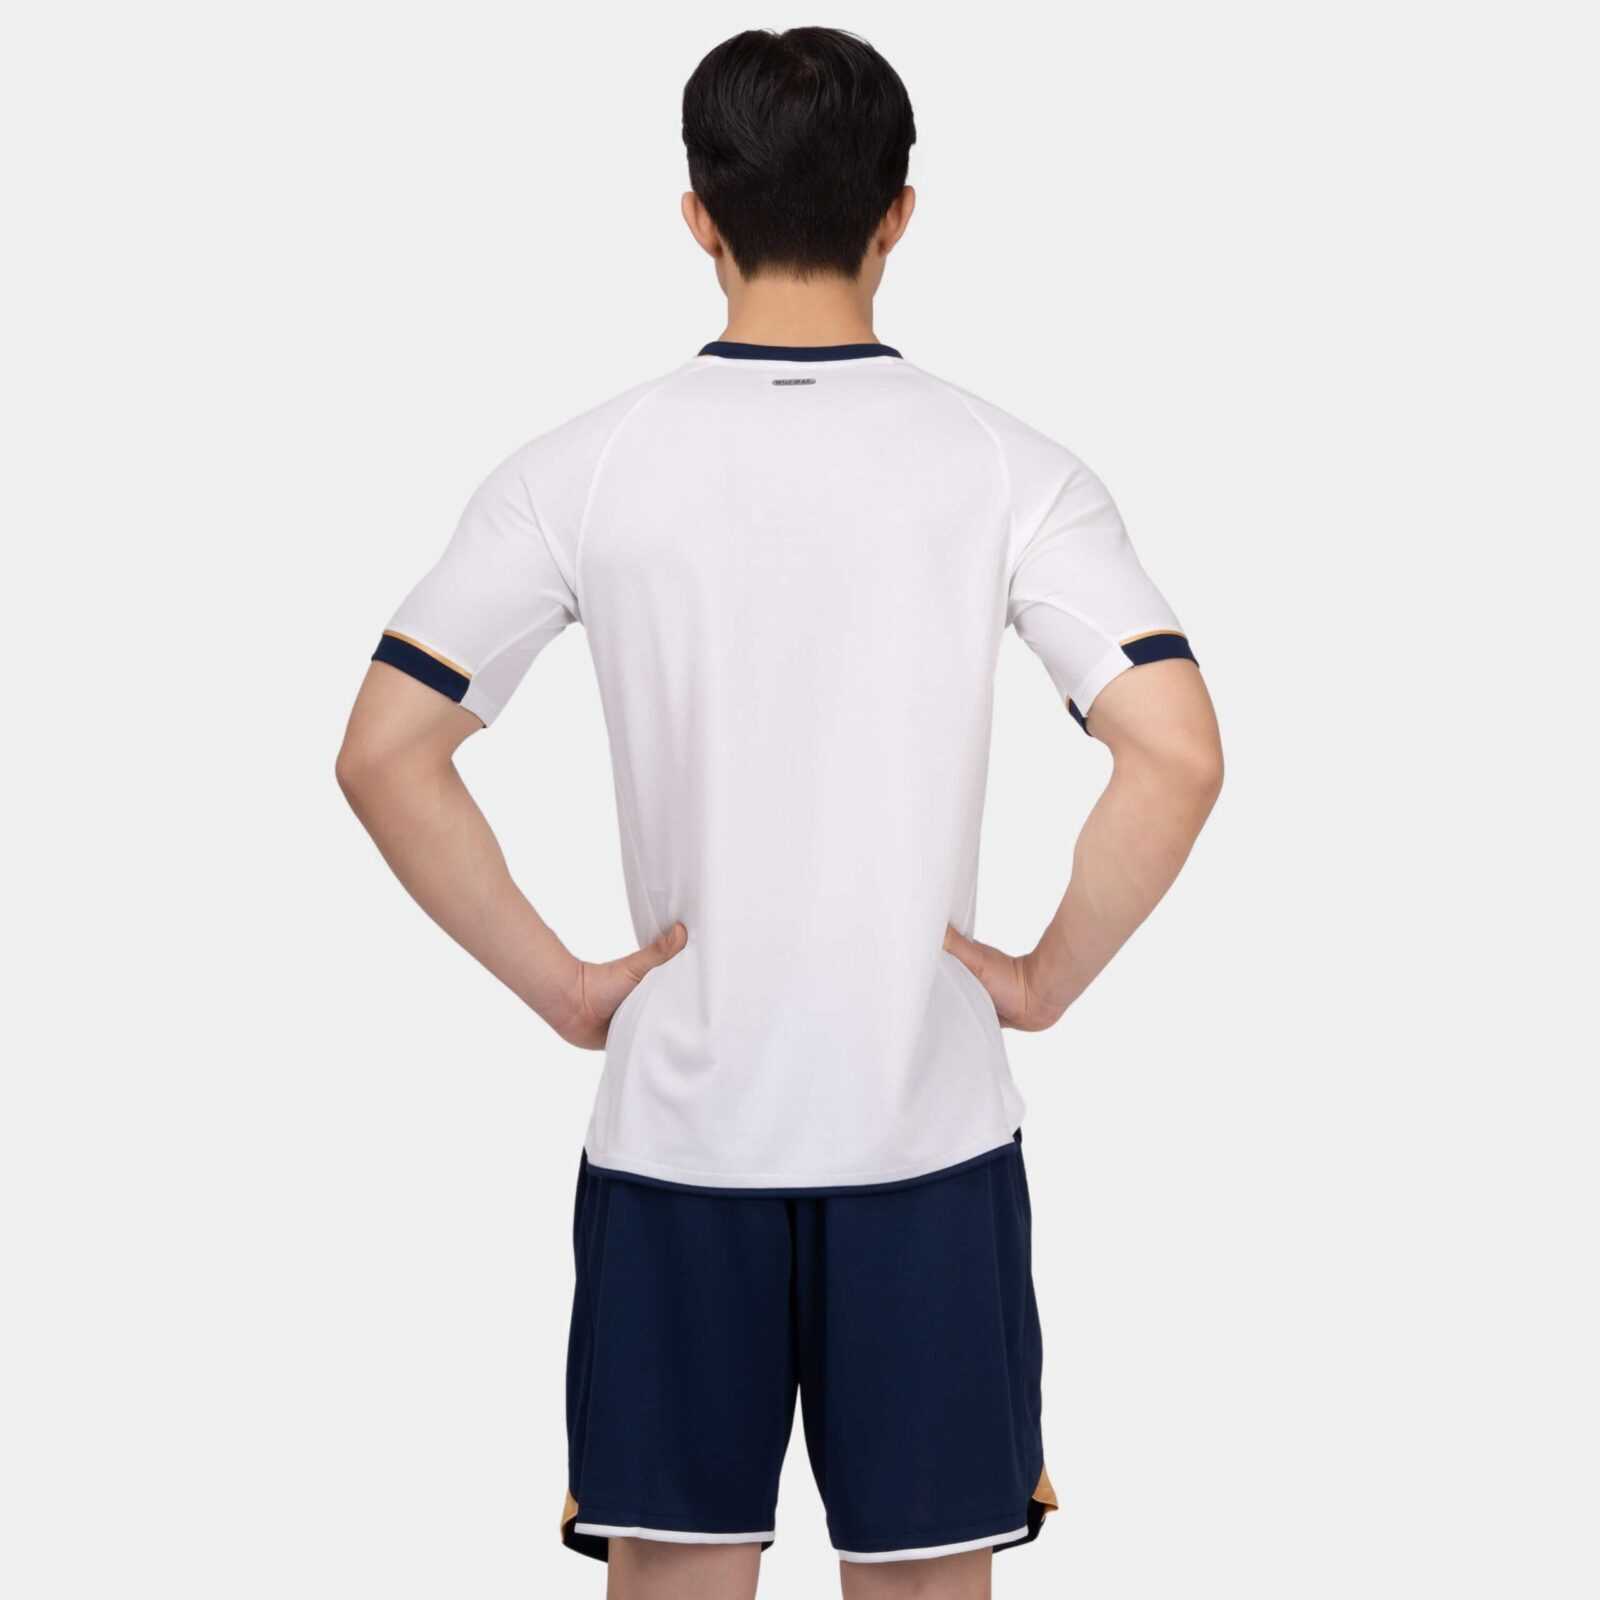 Bộ quần áo bóng đá phủi thiết kế chính hàng Bulbal Zenith nhiều màu xang biển navy 1